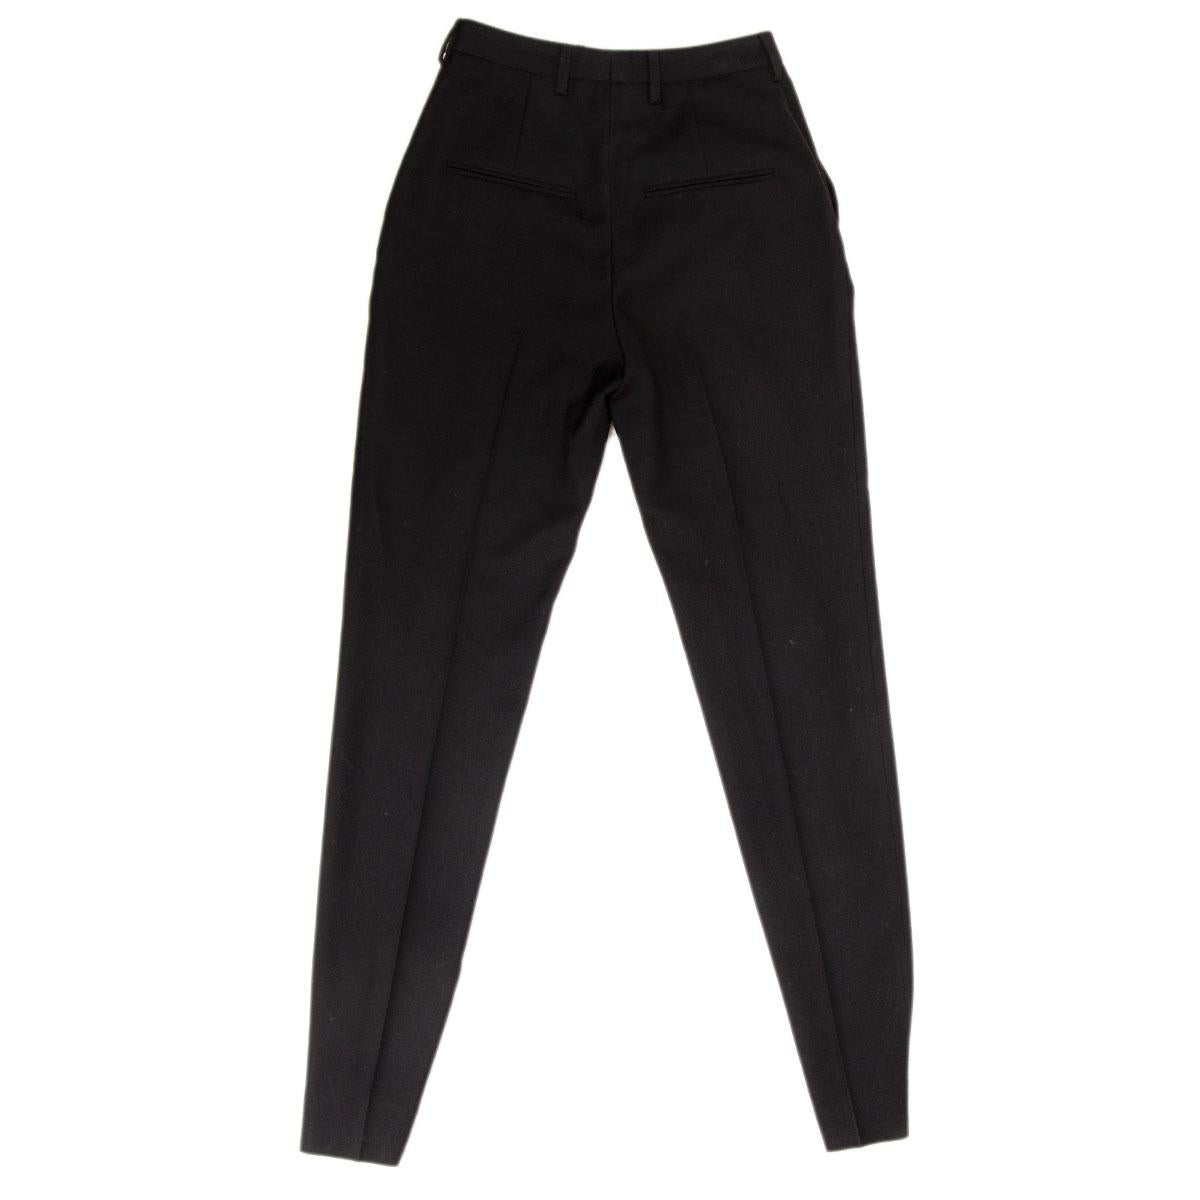 pantalon classique Saint Laurent 100% authentique en laine noire (100%) avec une jambe étroite et des plis devant et derrière. Il a des passants de ceinture, des poches à l'avant. Se ferme avec un crochet et un bouton dissimulés à la taille et une